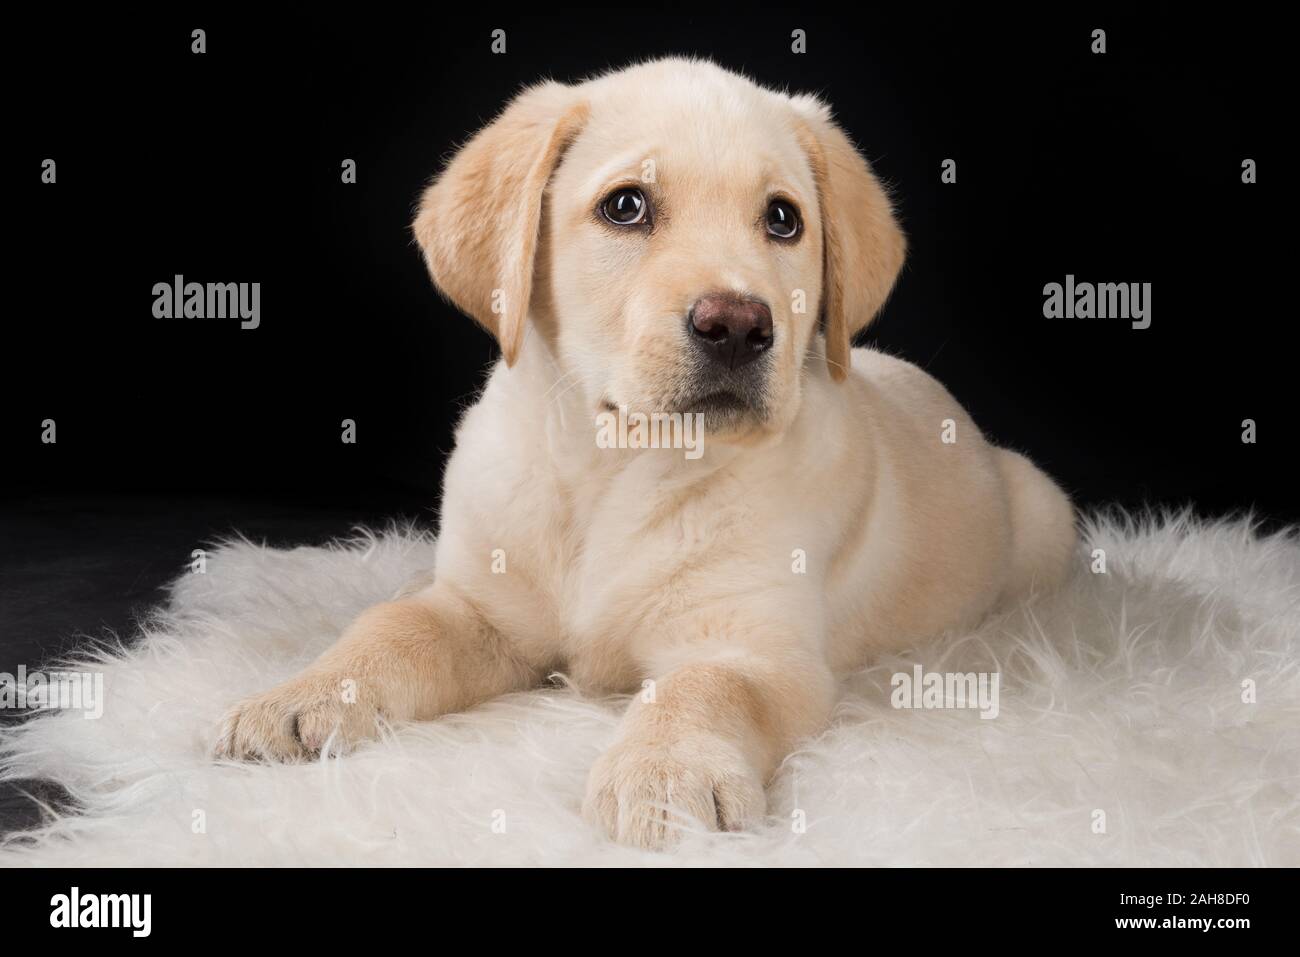 Primer plano retrato de un joven perro labrador sentado sobre una alfombra sobre un fondo negro Foto de stock